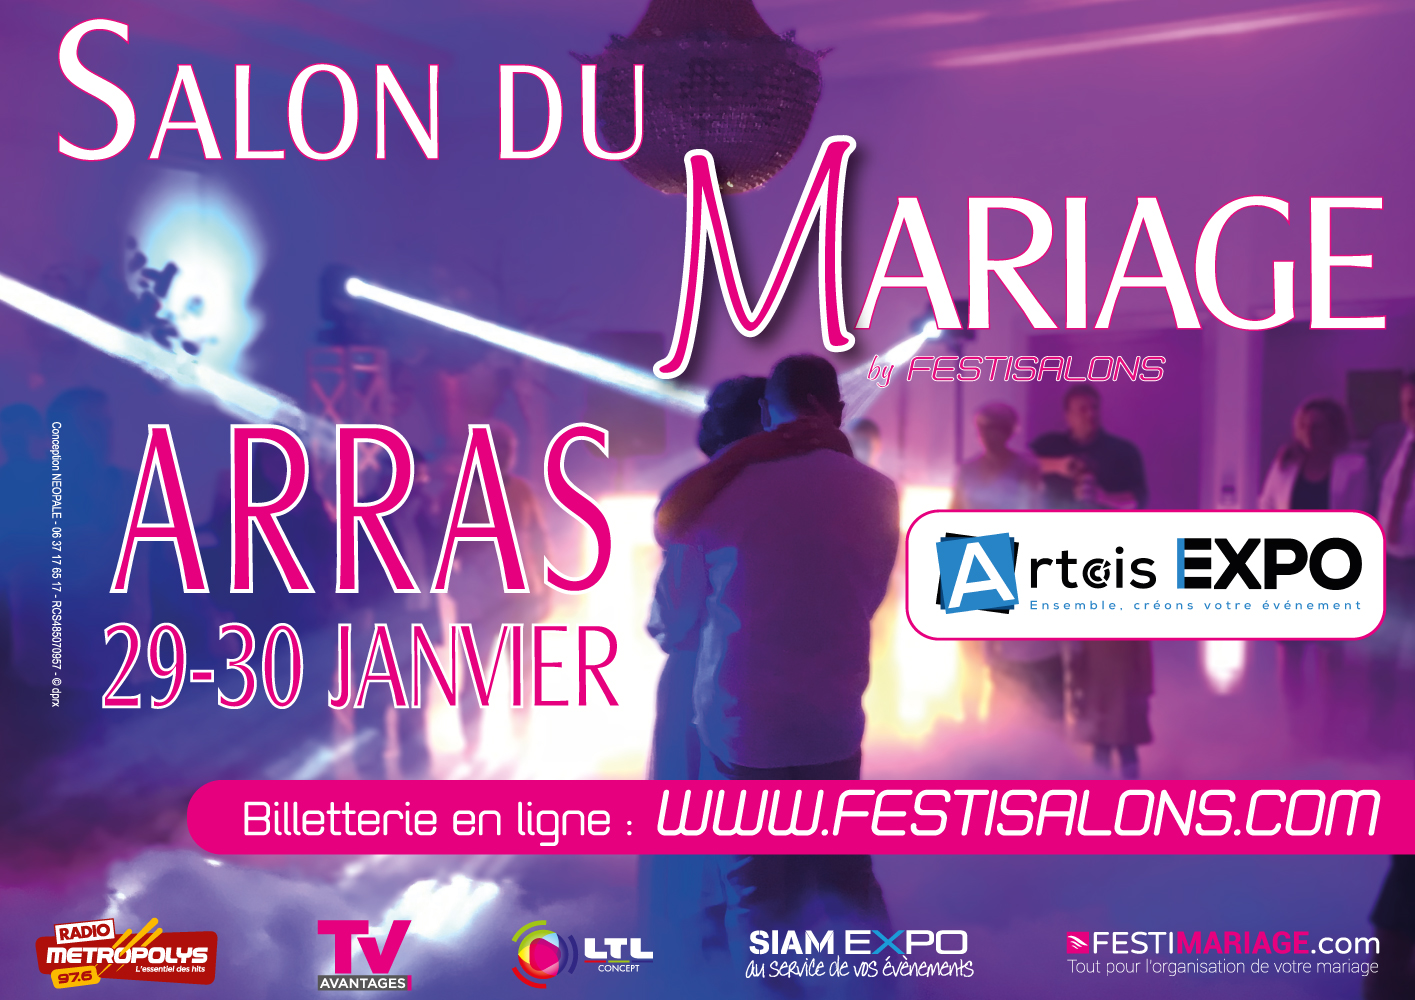 PAYSAGE-web-SALON-MARIAGE-ARRAS-FESTISALONS-2022 Archive Salon du Mariage Arras Artois Expo